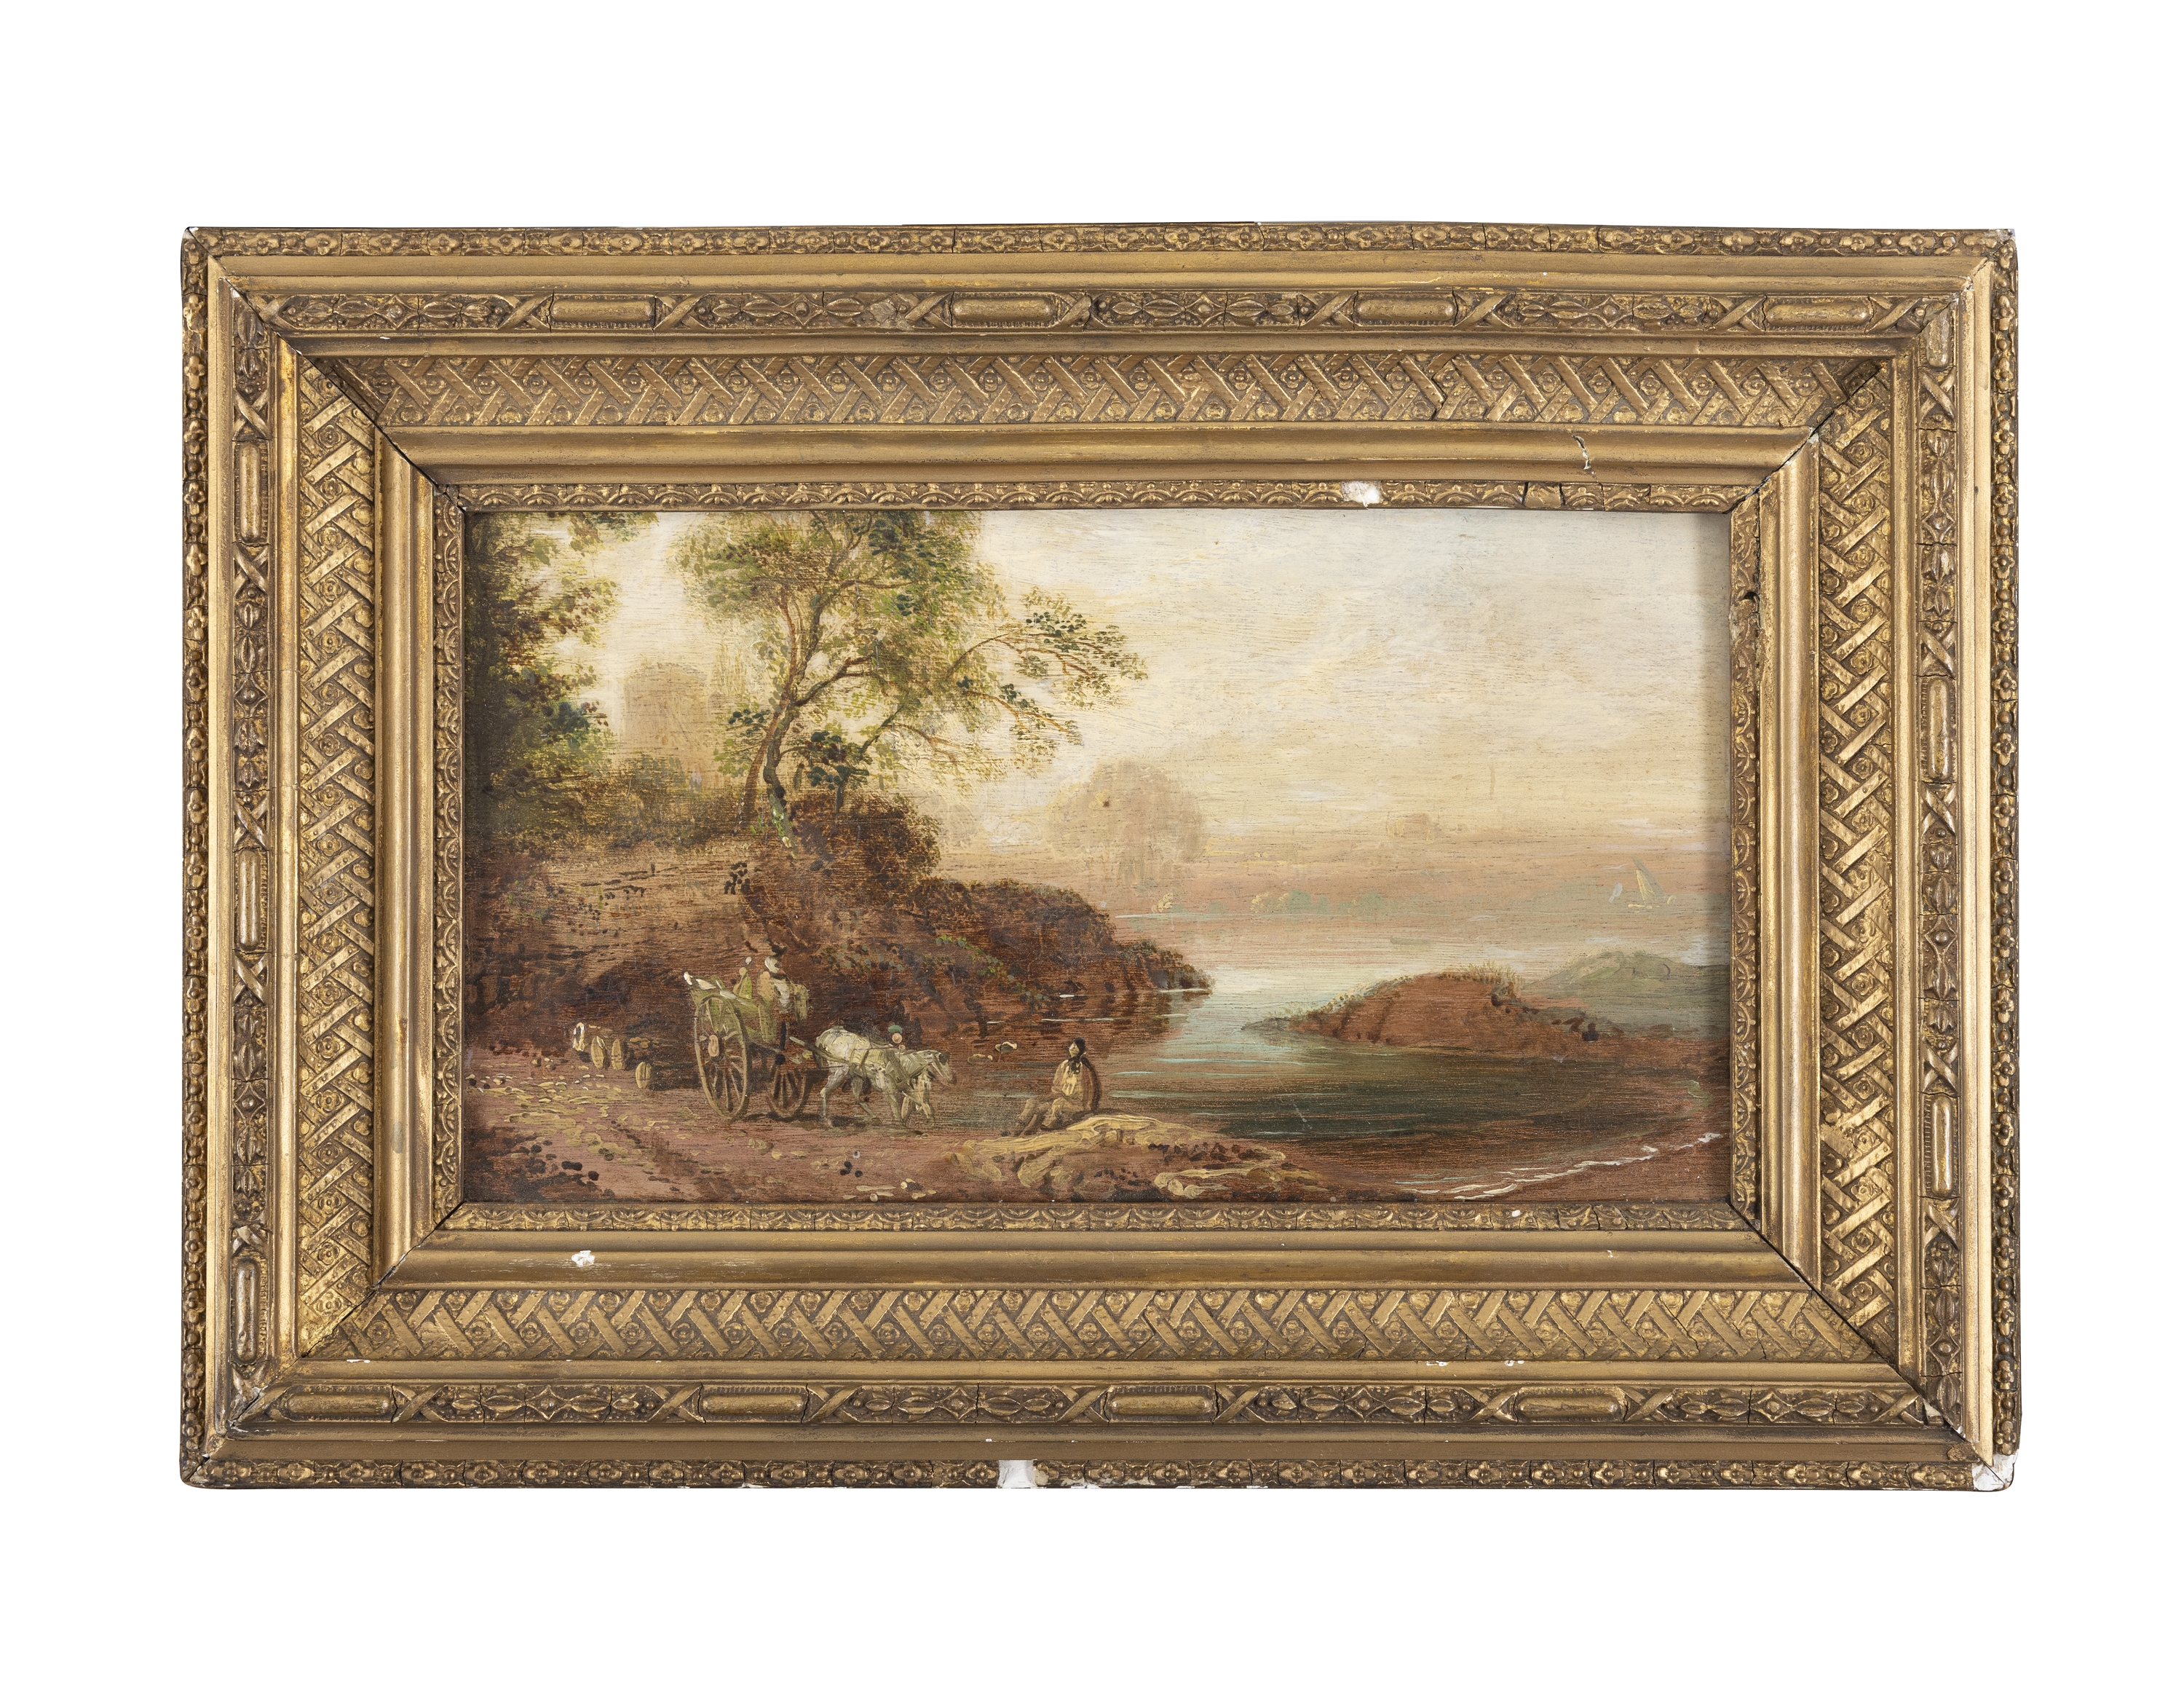 Artwork by William Sadler, Figures in a River Landscape, Made of Oil on wood